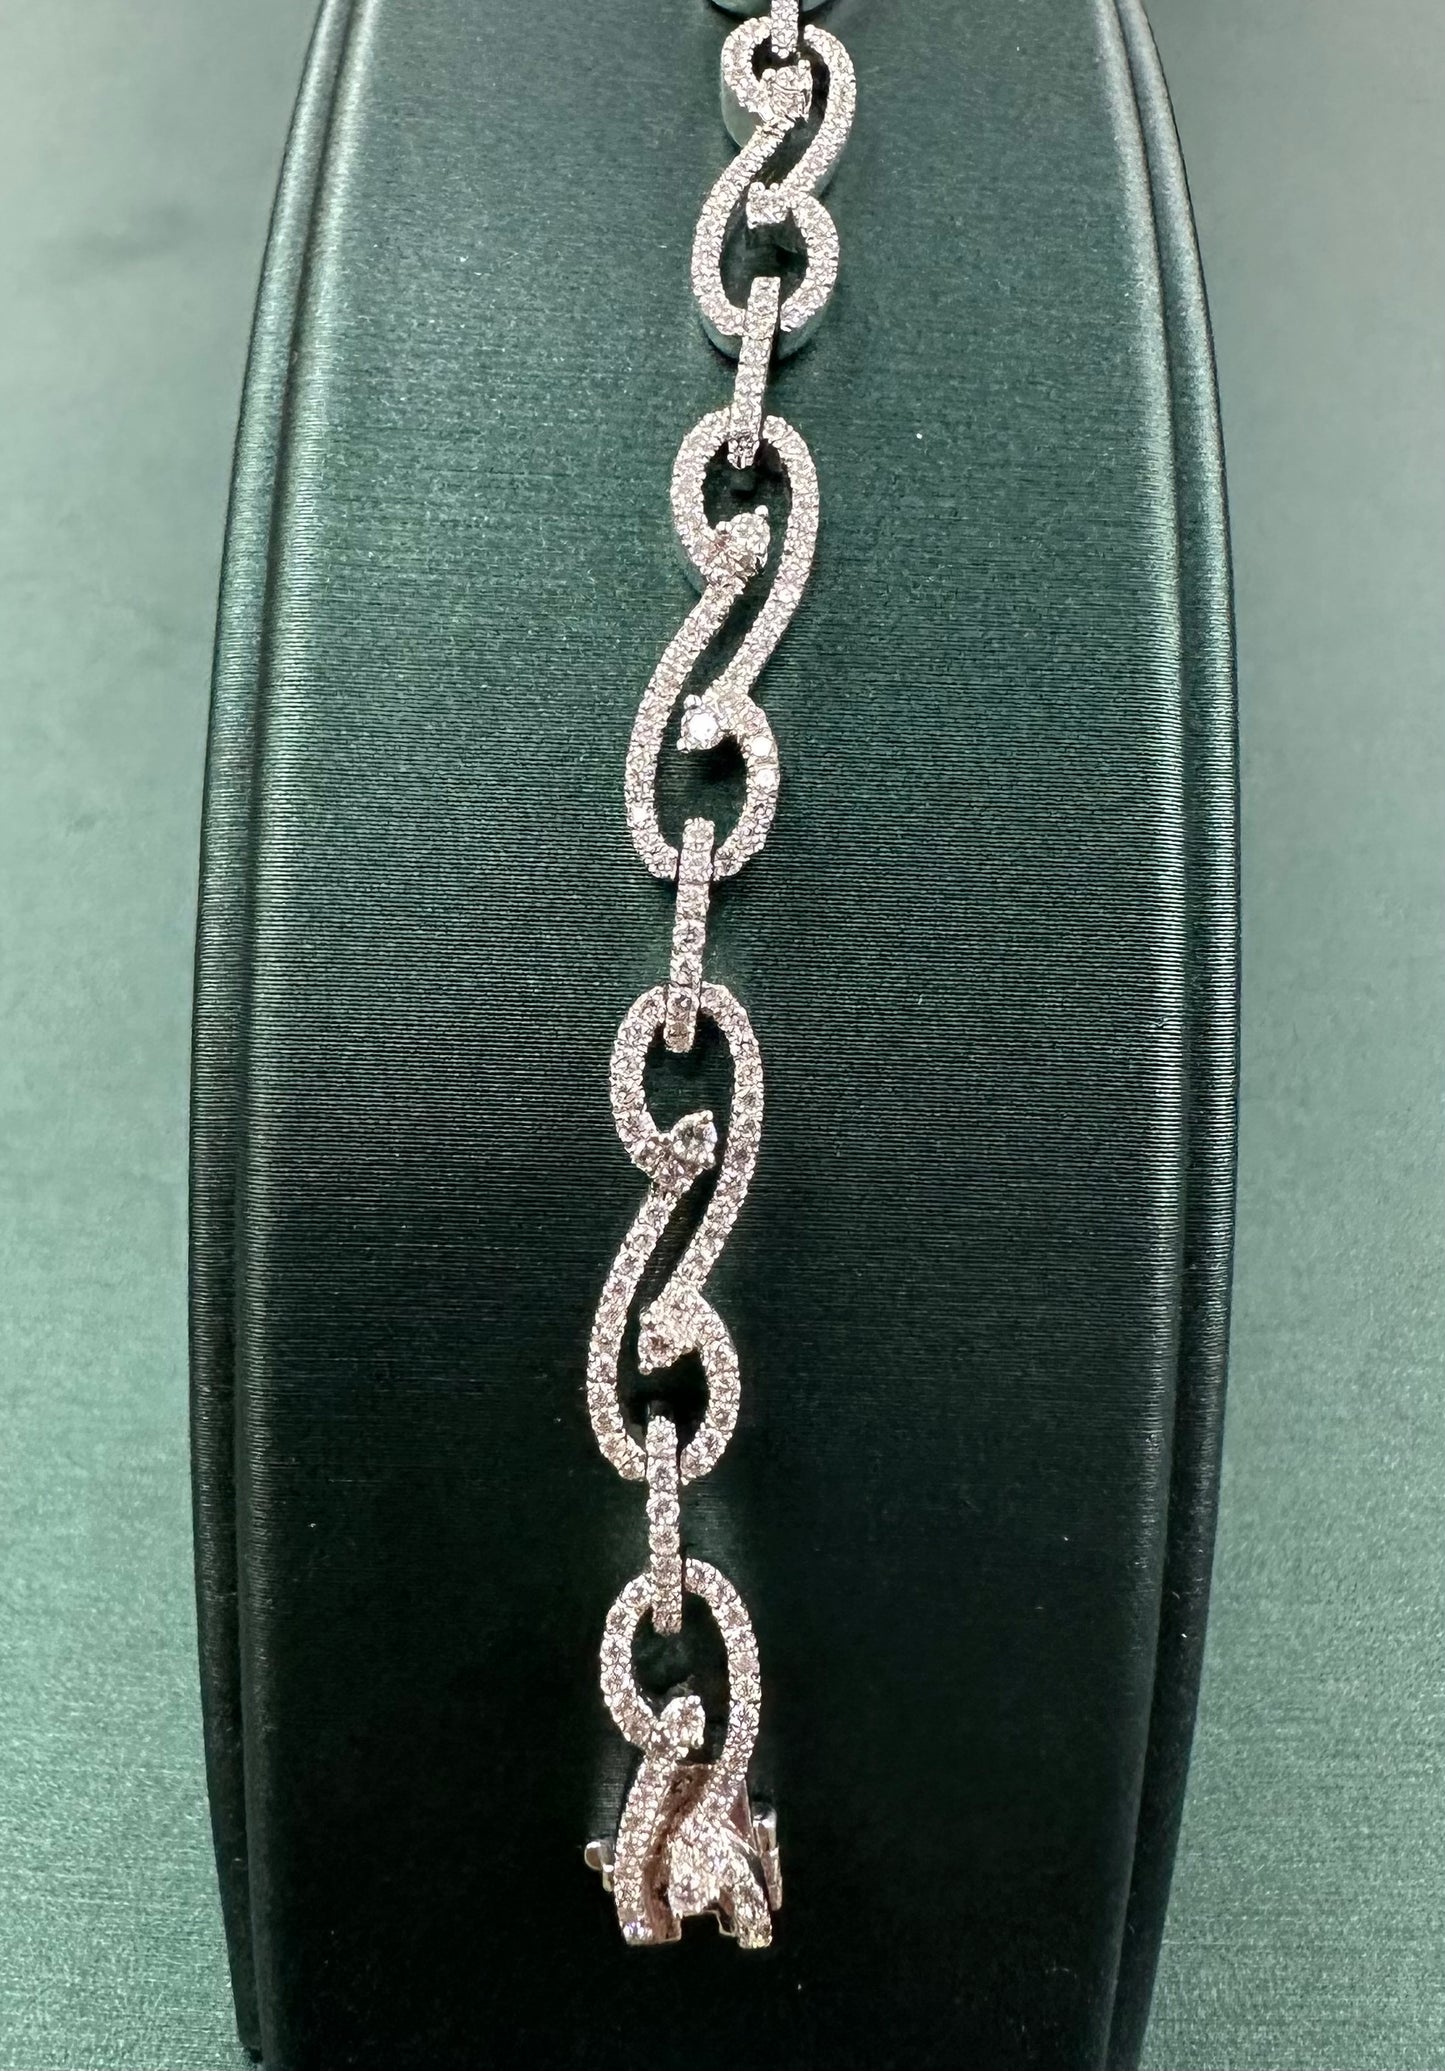 Diamond cursive bracelet